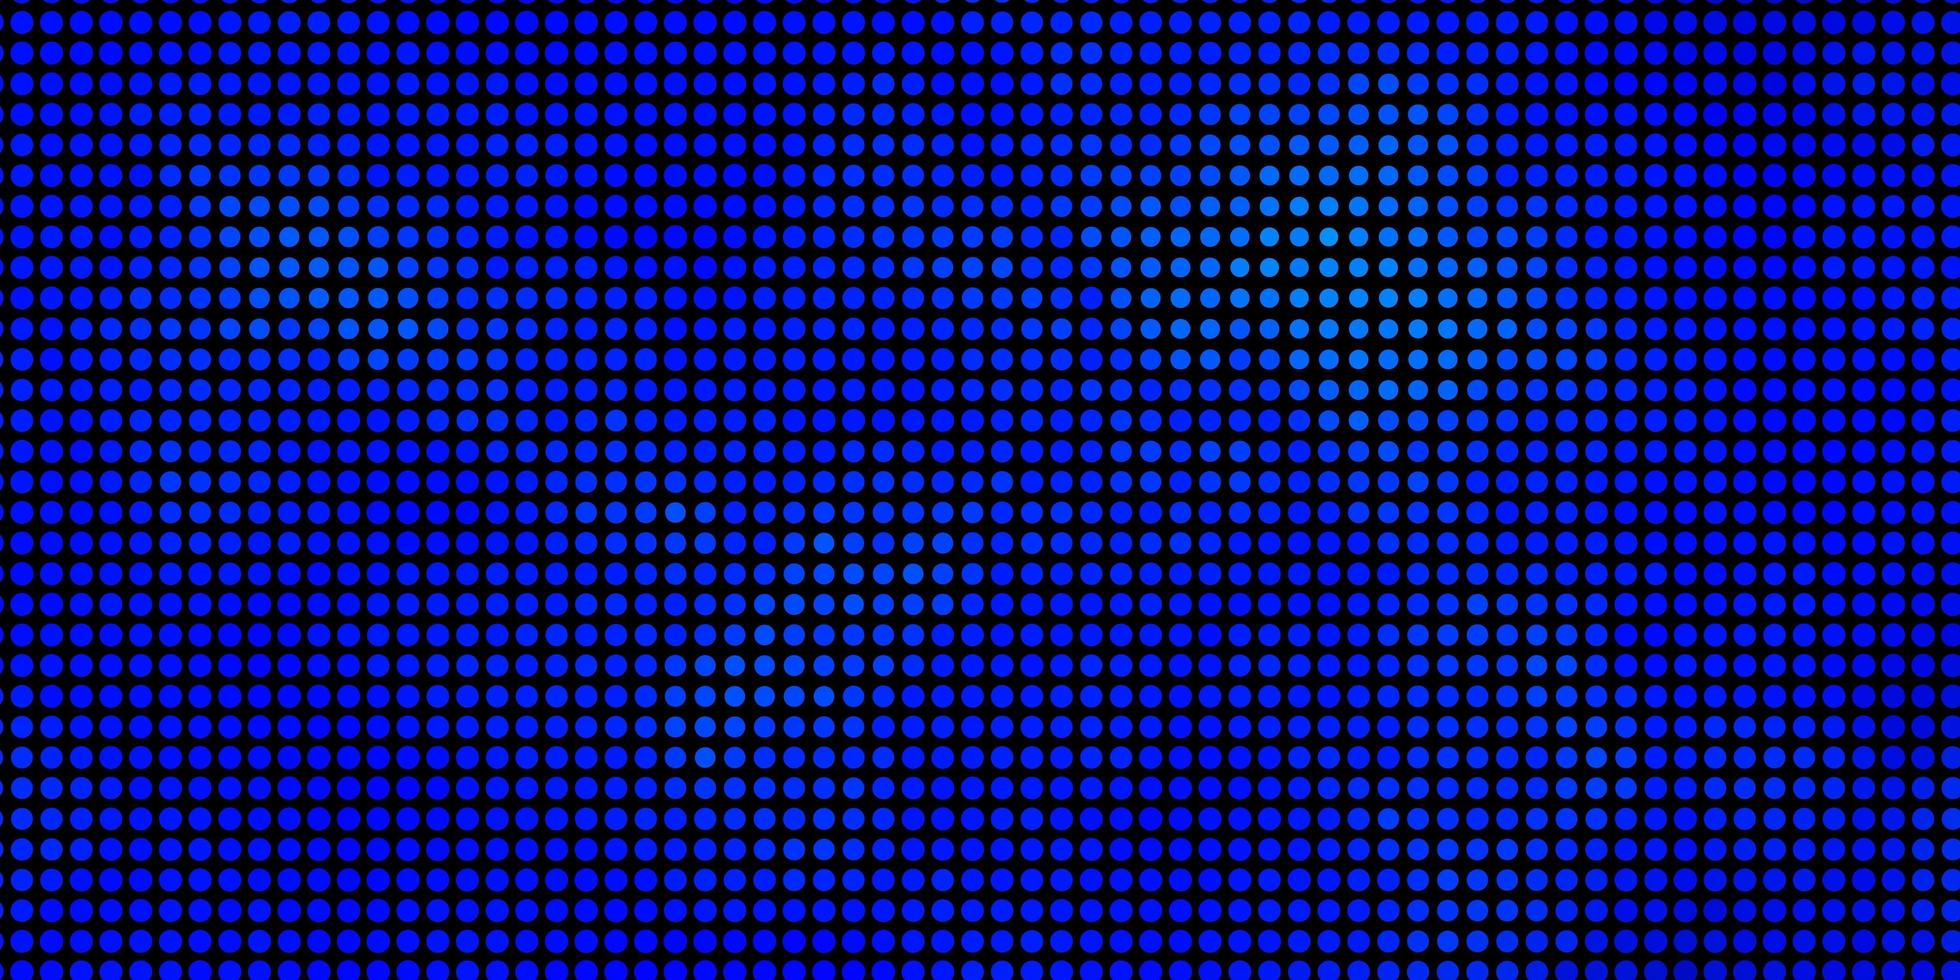 fundo azul claro do vetor com círculos.